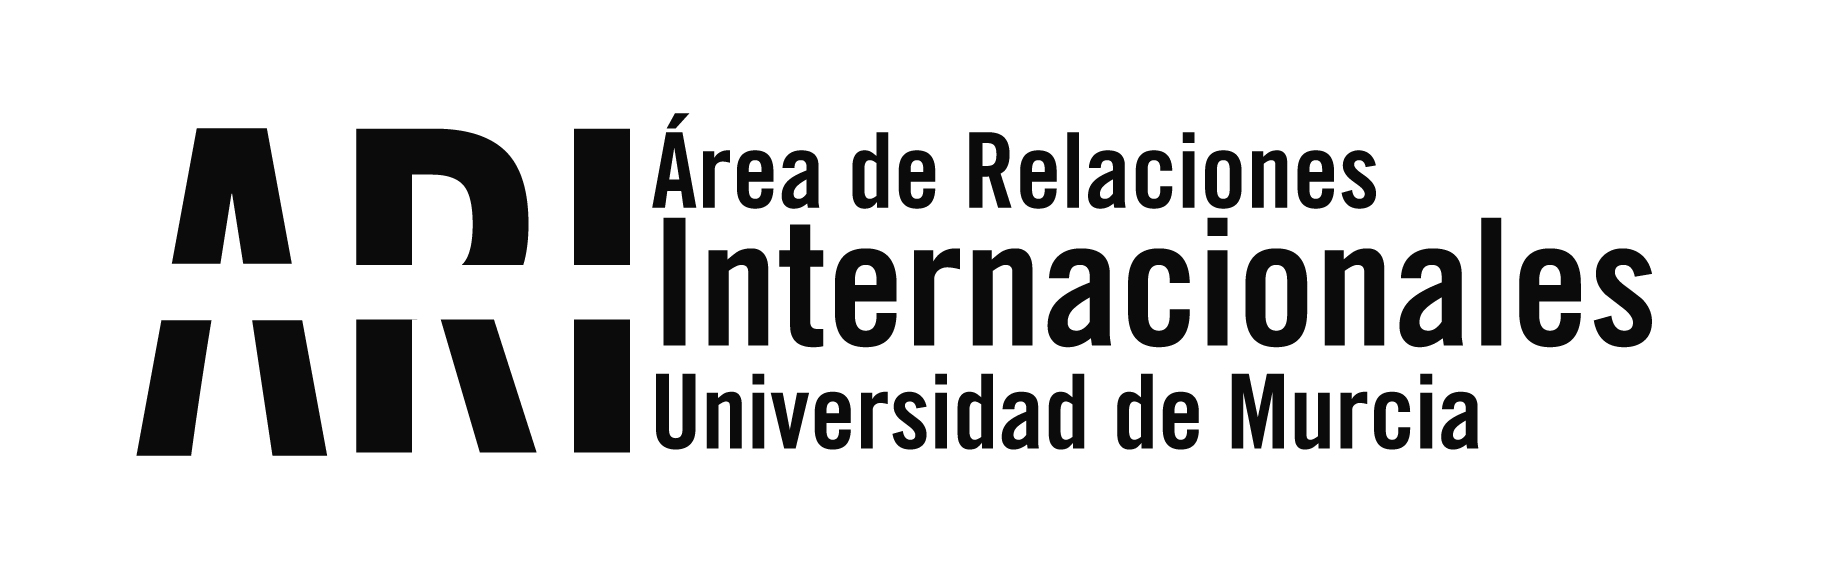 Éxito en la inscripción en los cursos de idiomas de la Universidad de Murcia - Área de Relaciones Internacionales